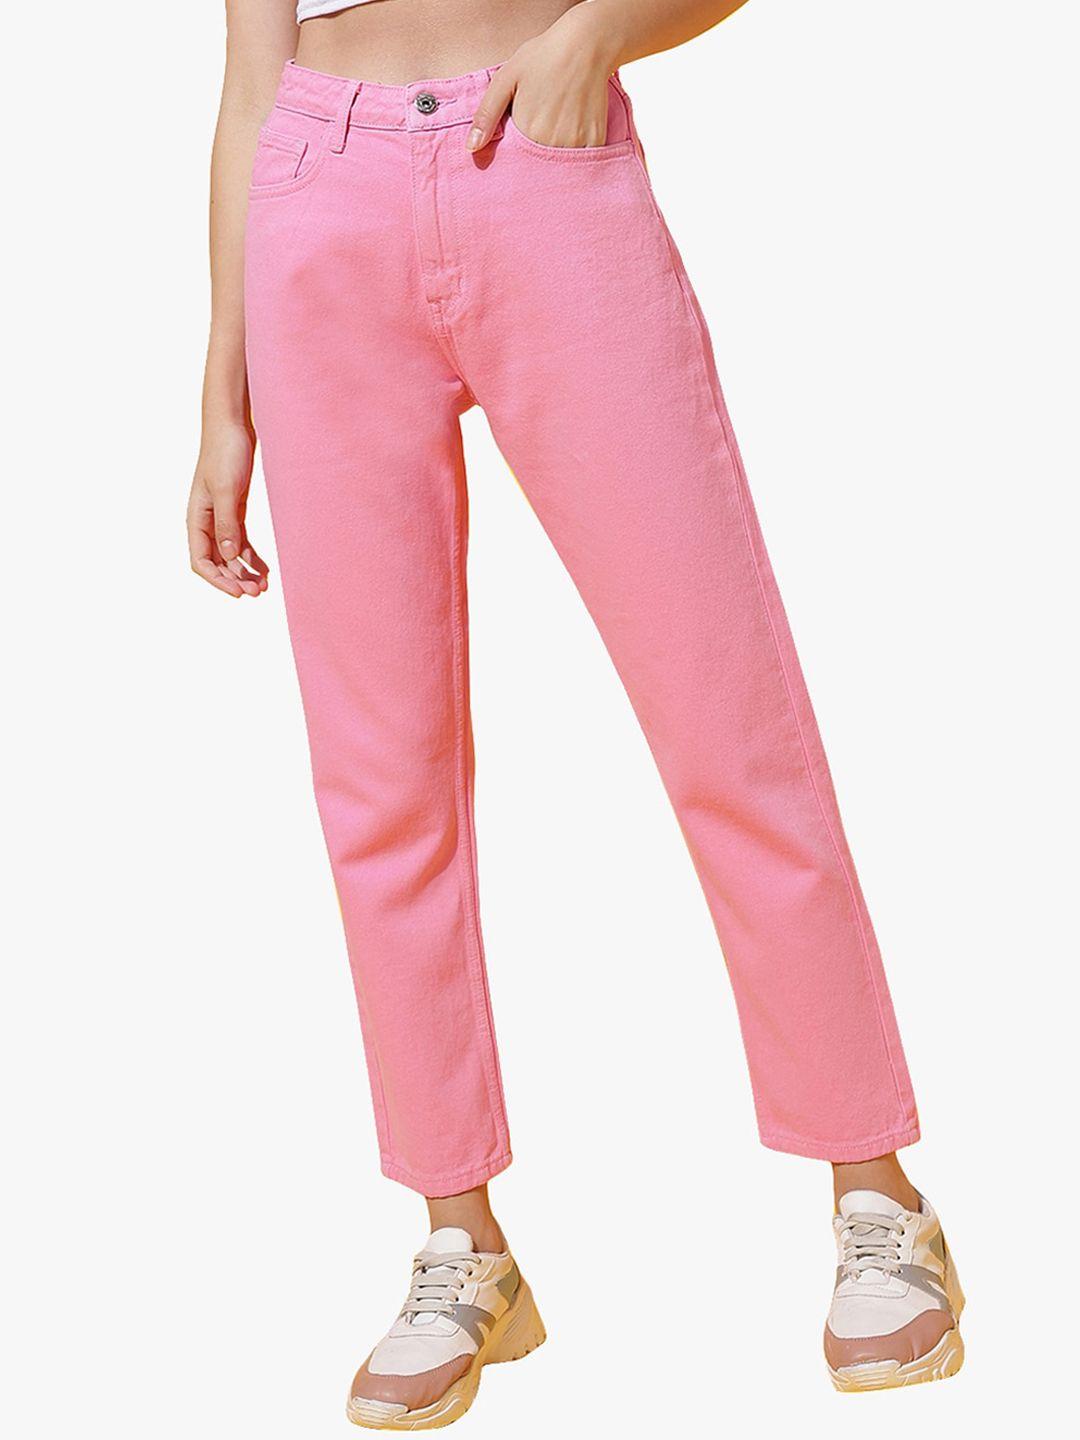 belliskey women pink high-rise jeans